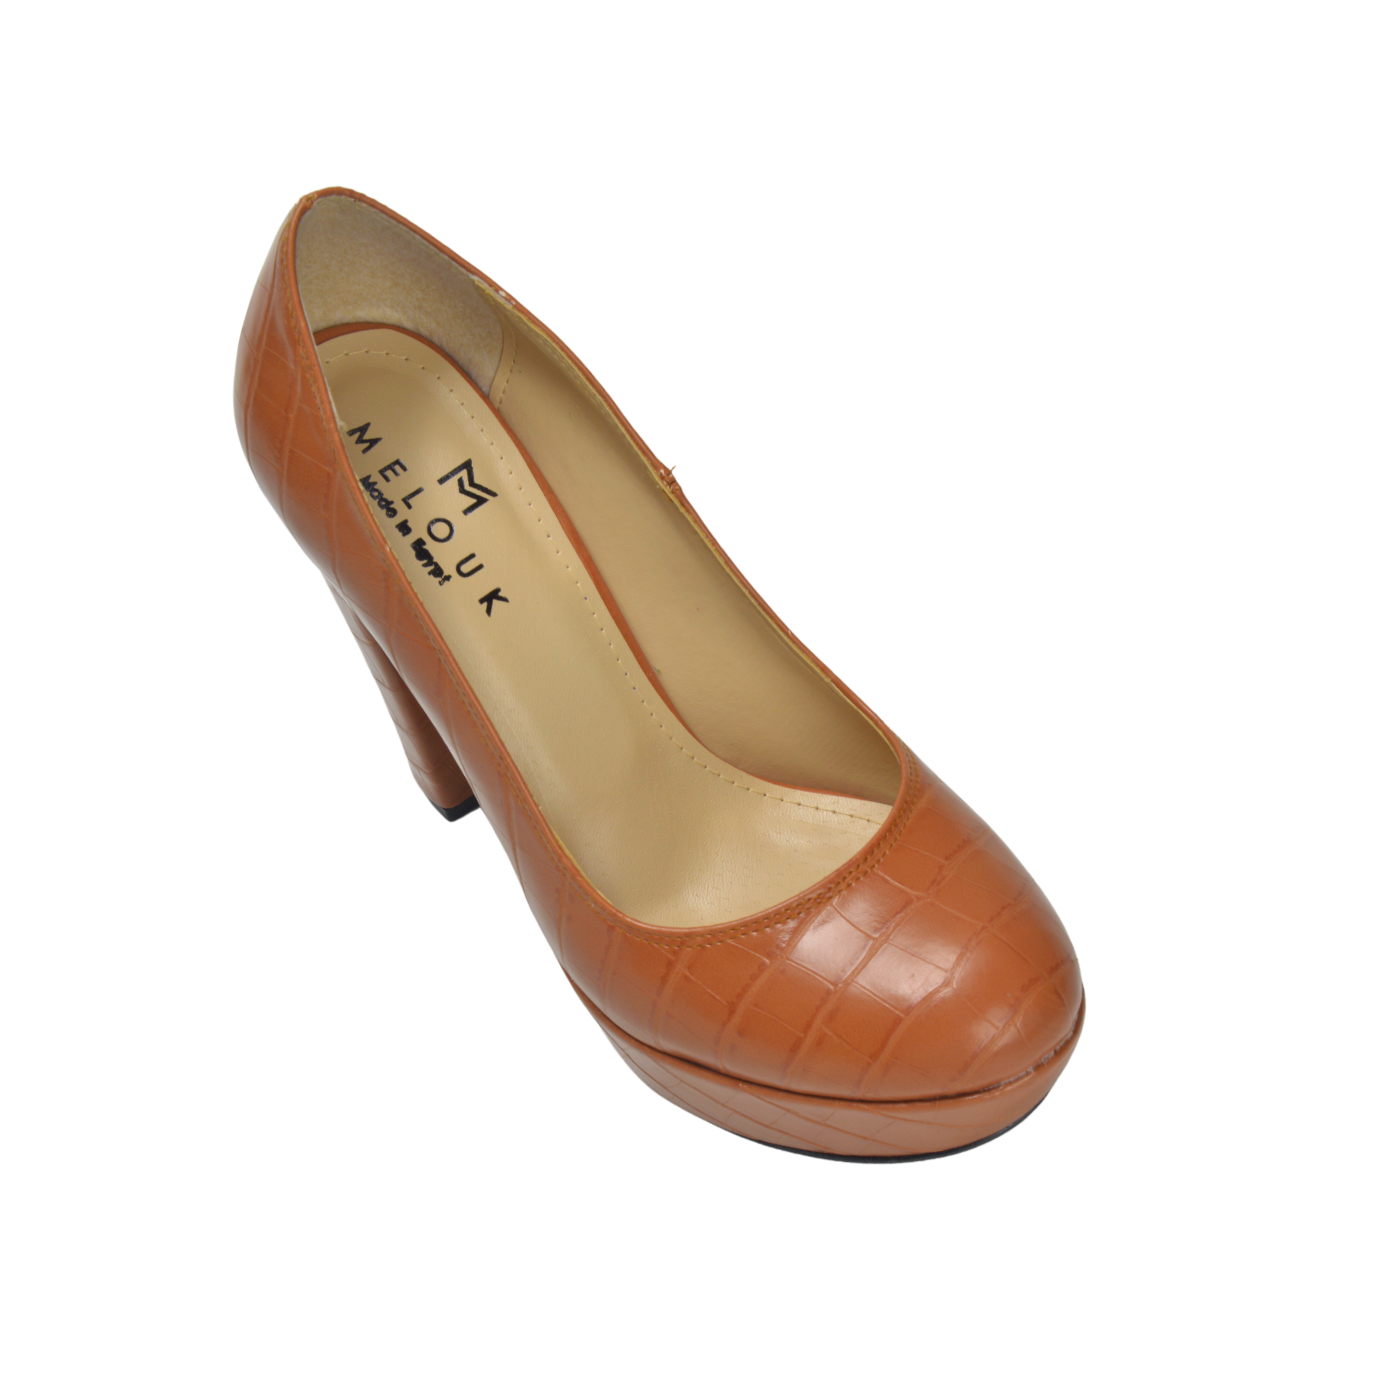 Elegant Leather High Heels Shoe Camel - Melouk